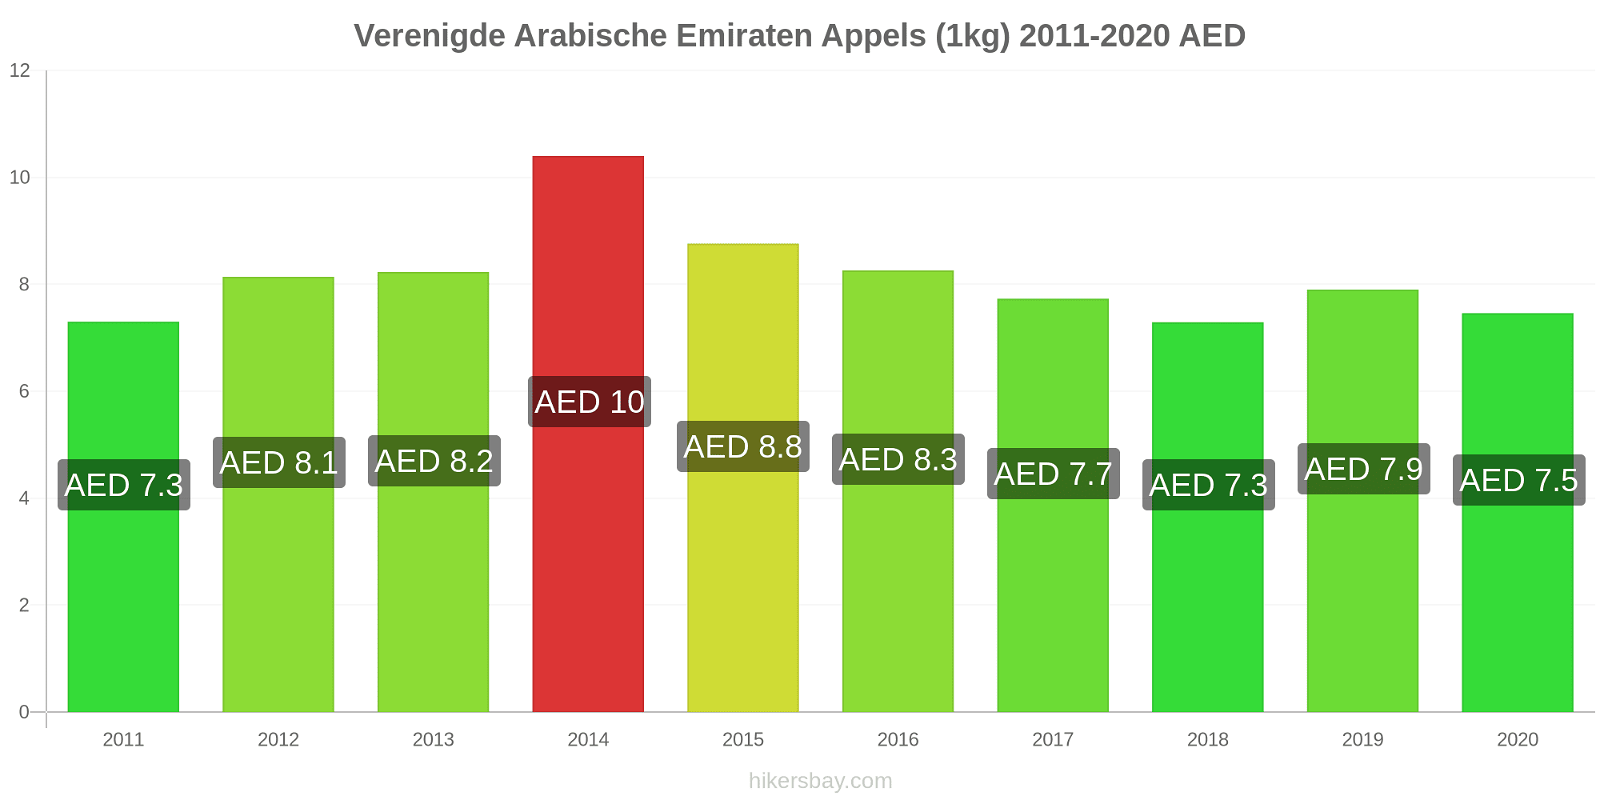 Verenigde Arabische Emiraten prijswijzigingen Appels (1kg) hikersbay.com